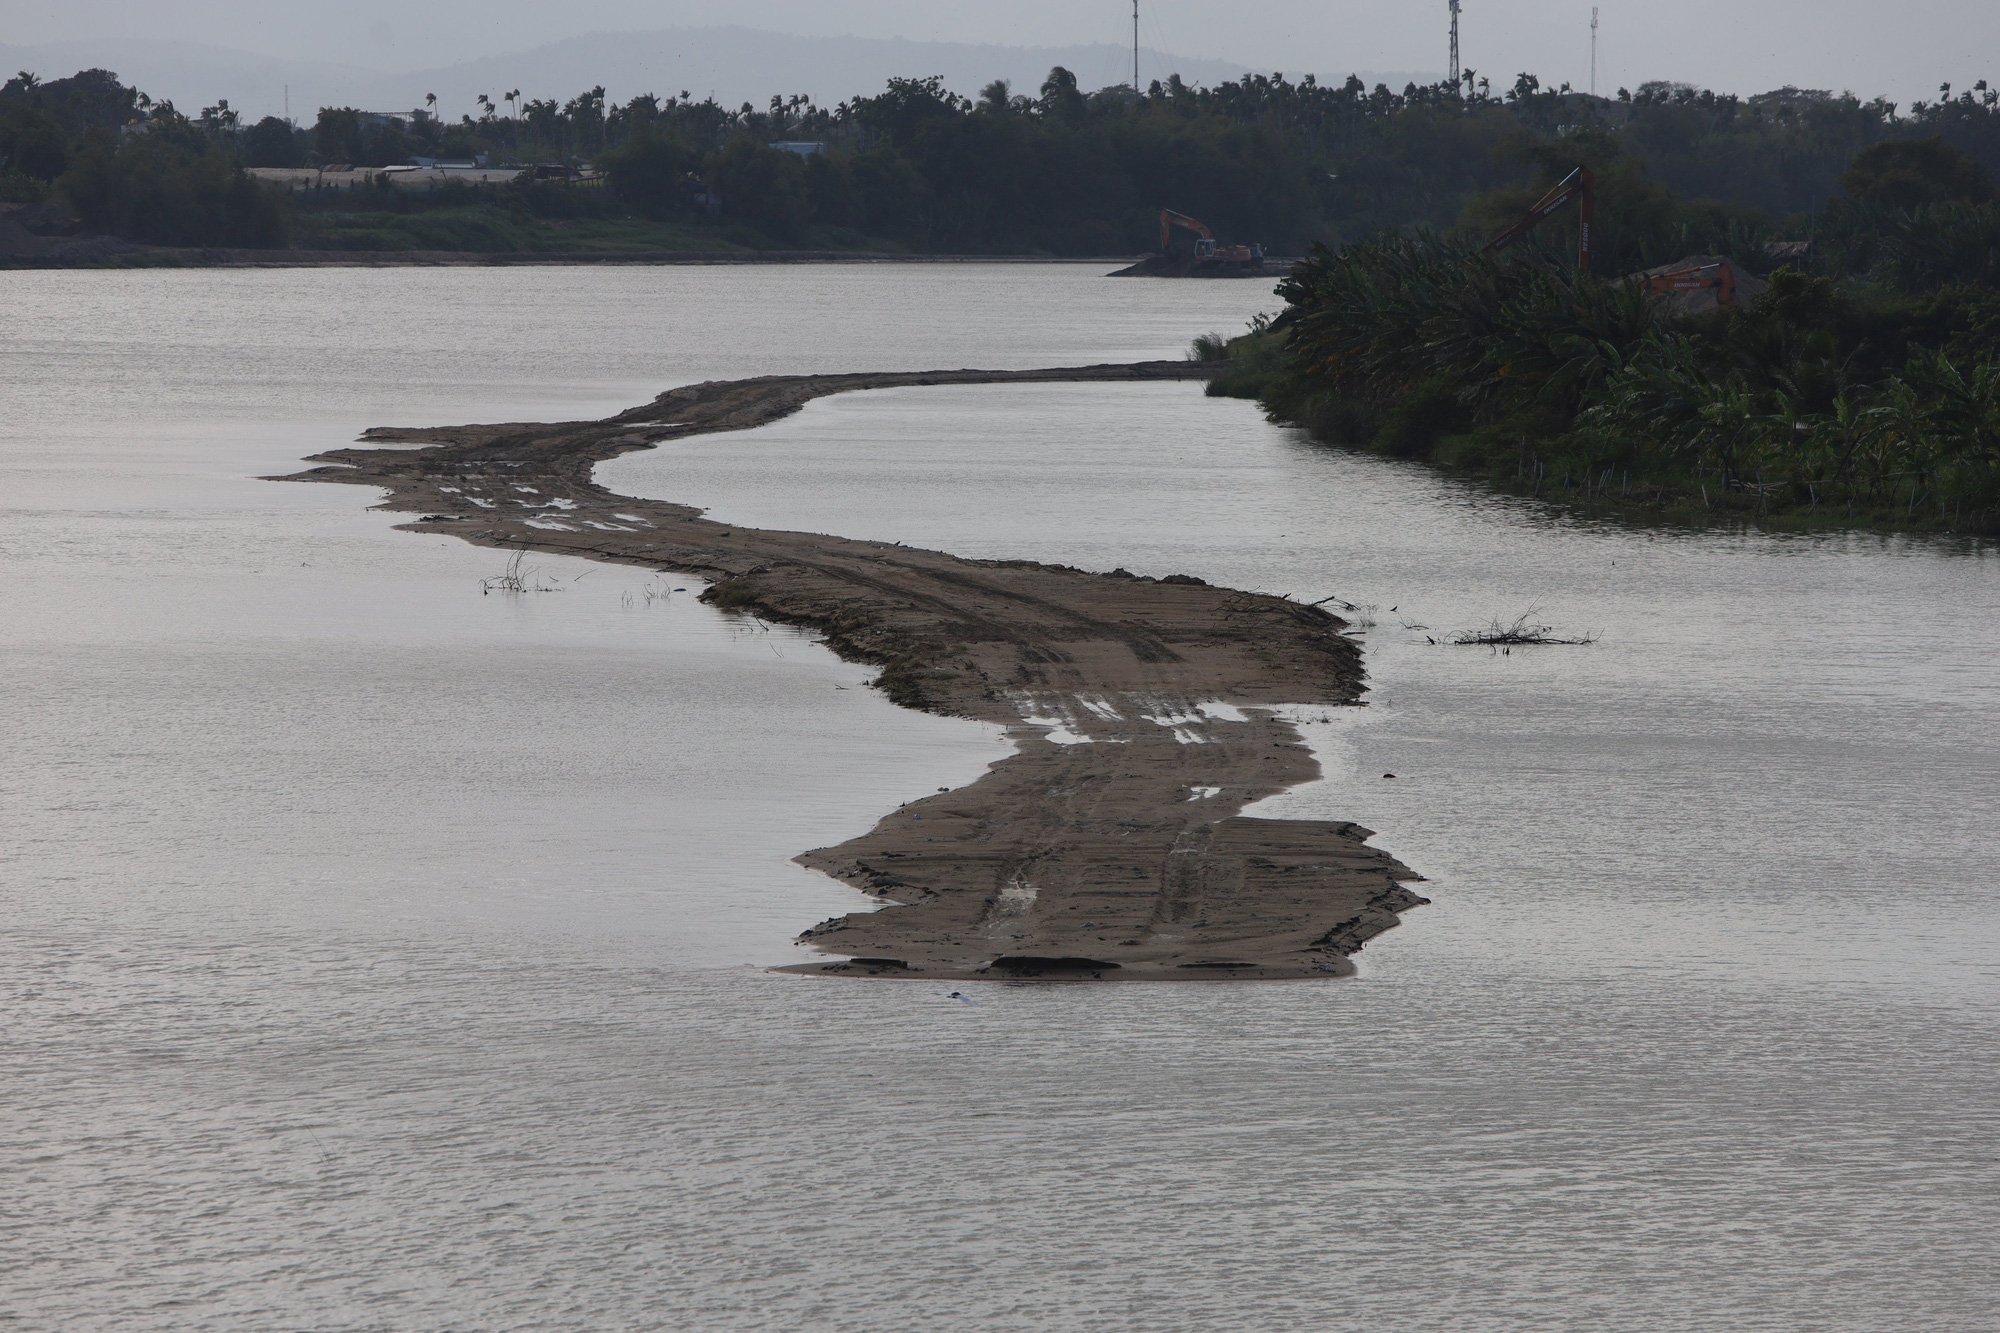 UBND tỉnh Ninh Thuận chỉ đạo dừng việc đắp đường công vụ trên sông Dinh để khai thác cát - Ảnh 1.